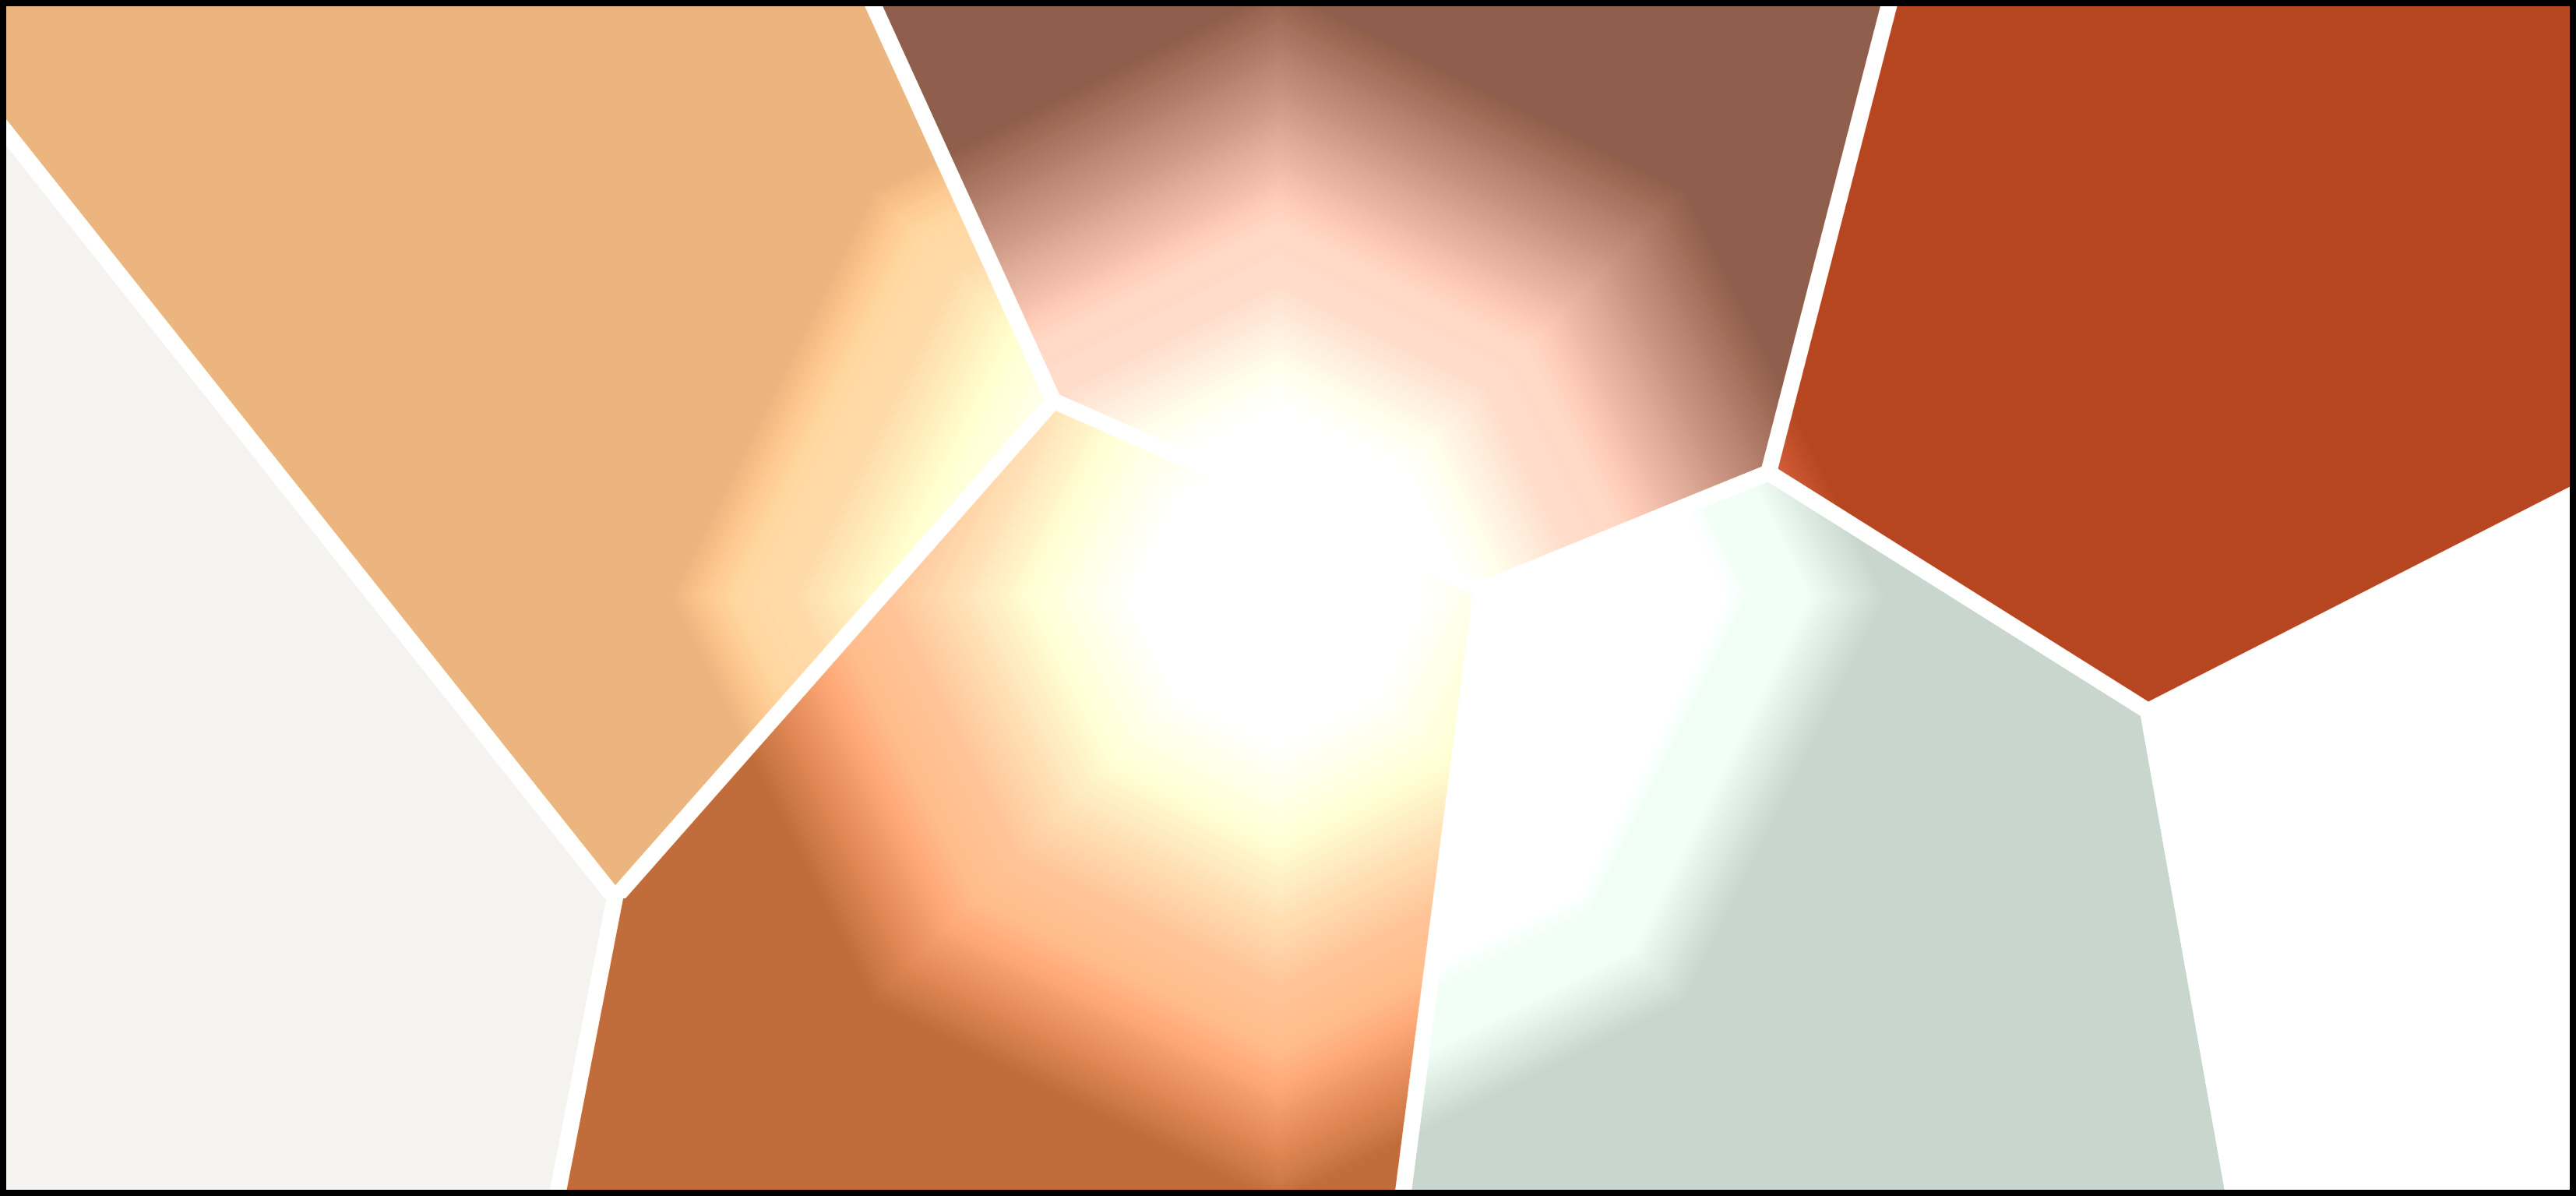 Teoskuva: eri ruskean ja harmaan sävyisiä kulmikkaita muotoja, keskellä valokehä